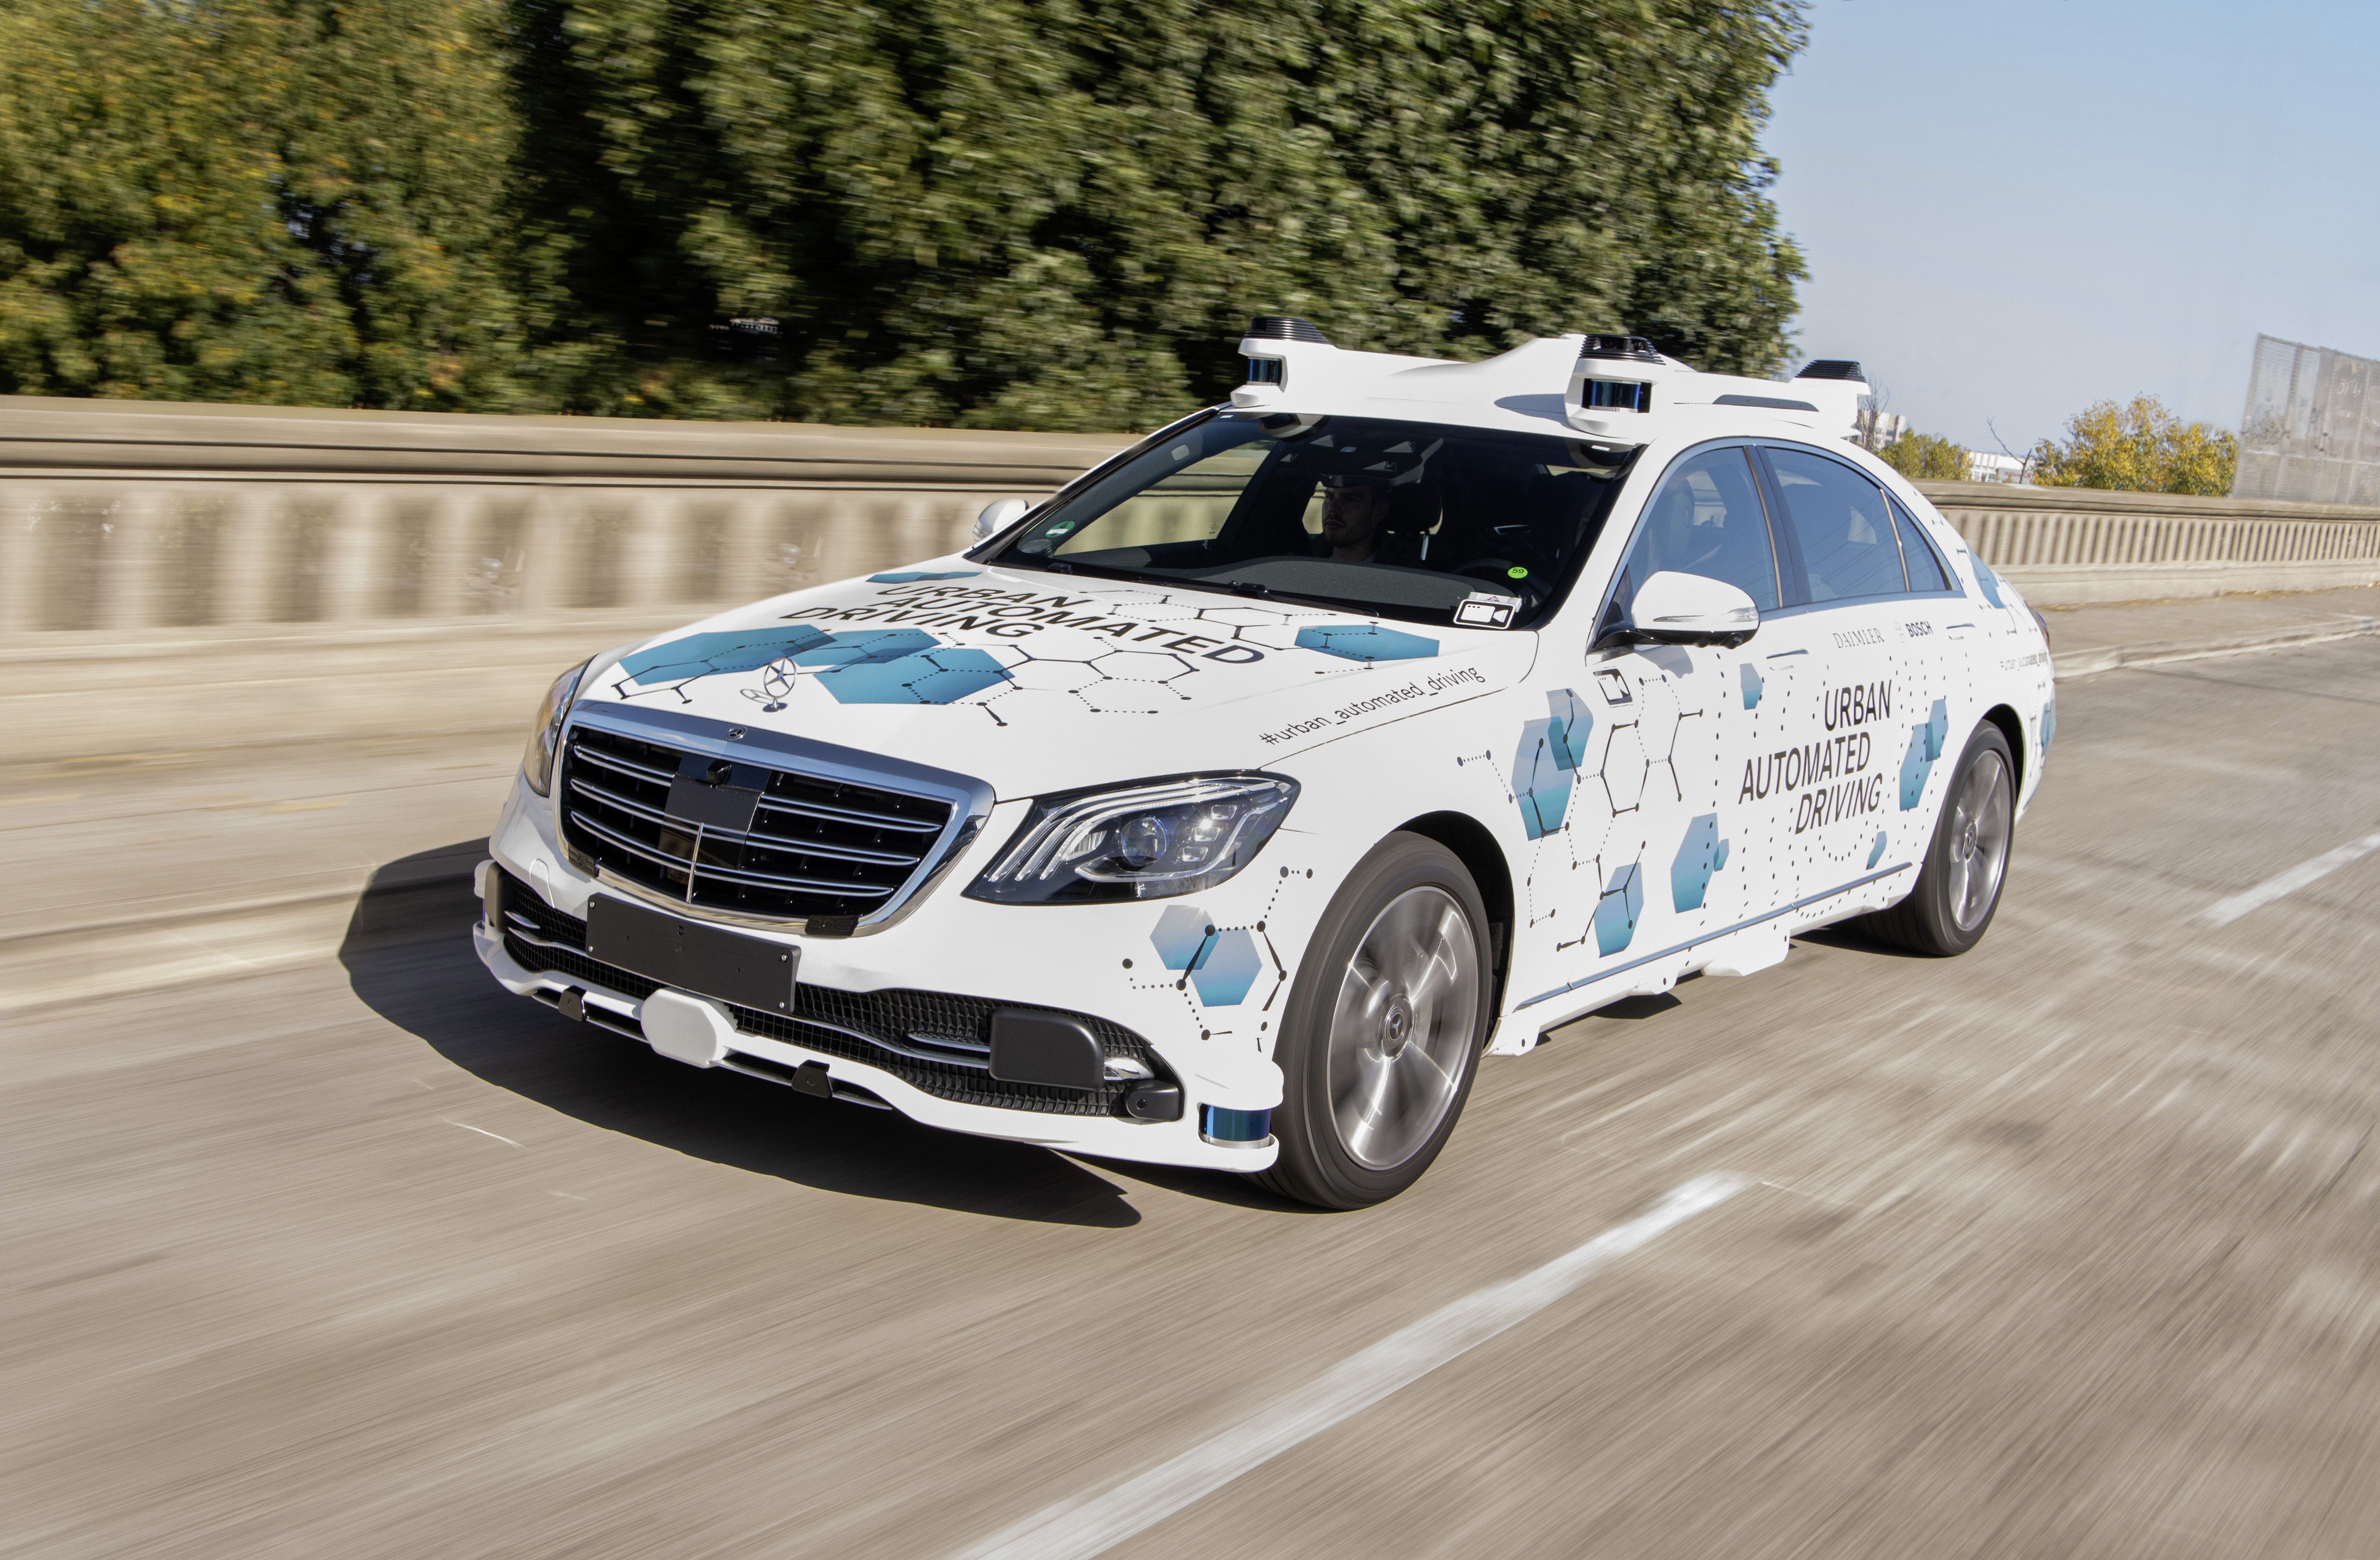 Fleet Autonomous Mercedes in San Jose